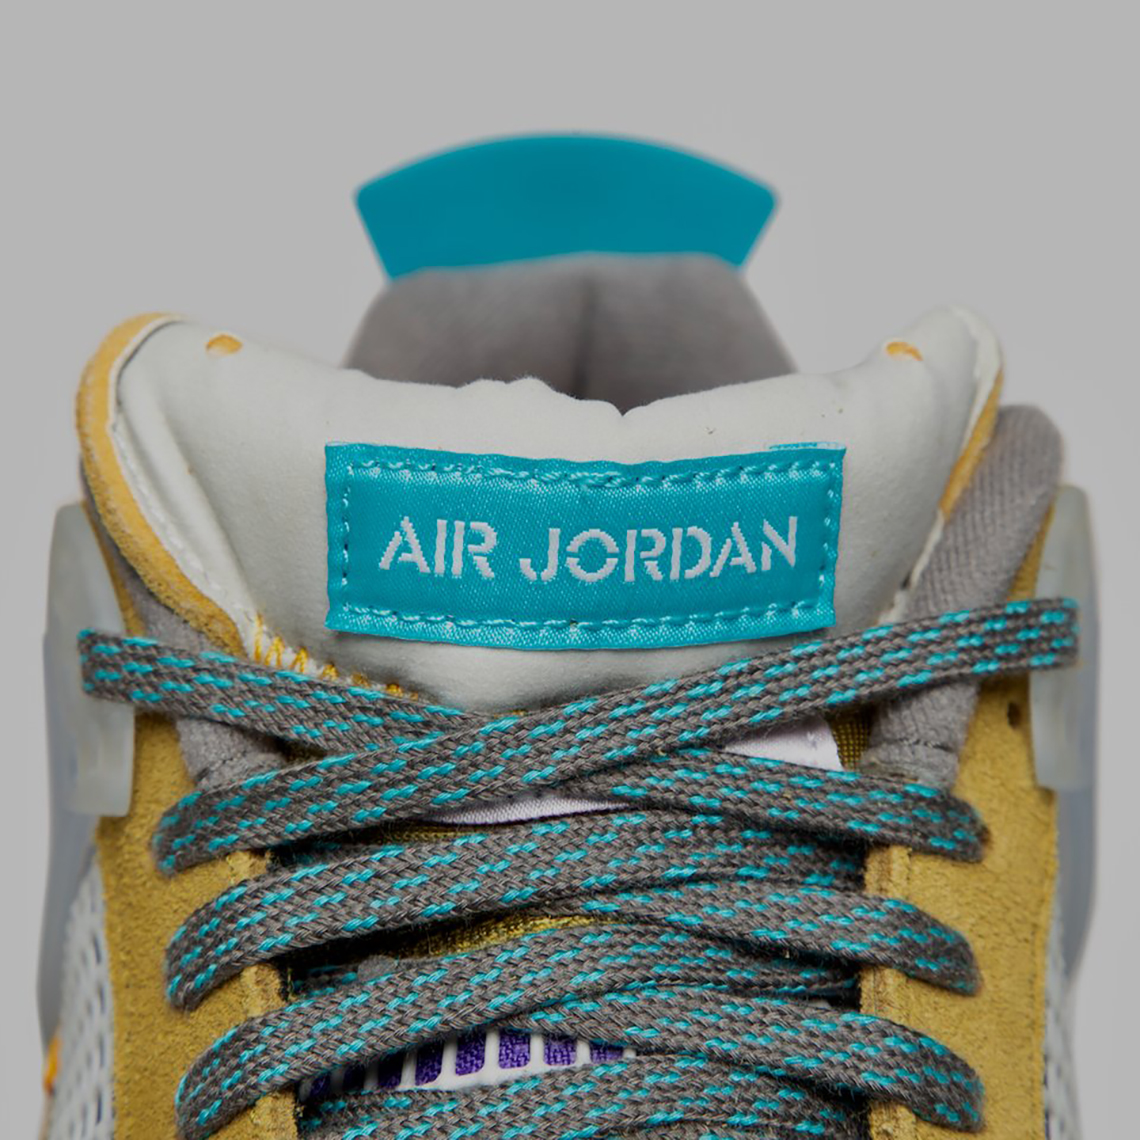 Union Jordan Kids Air Jordan 1 Retro High OG Bubble Gum sneakers Desert Moss Raffle Info 5